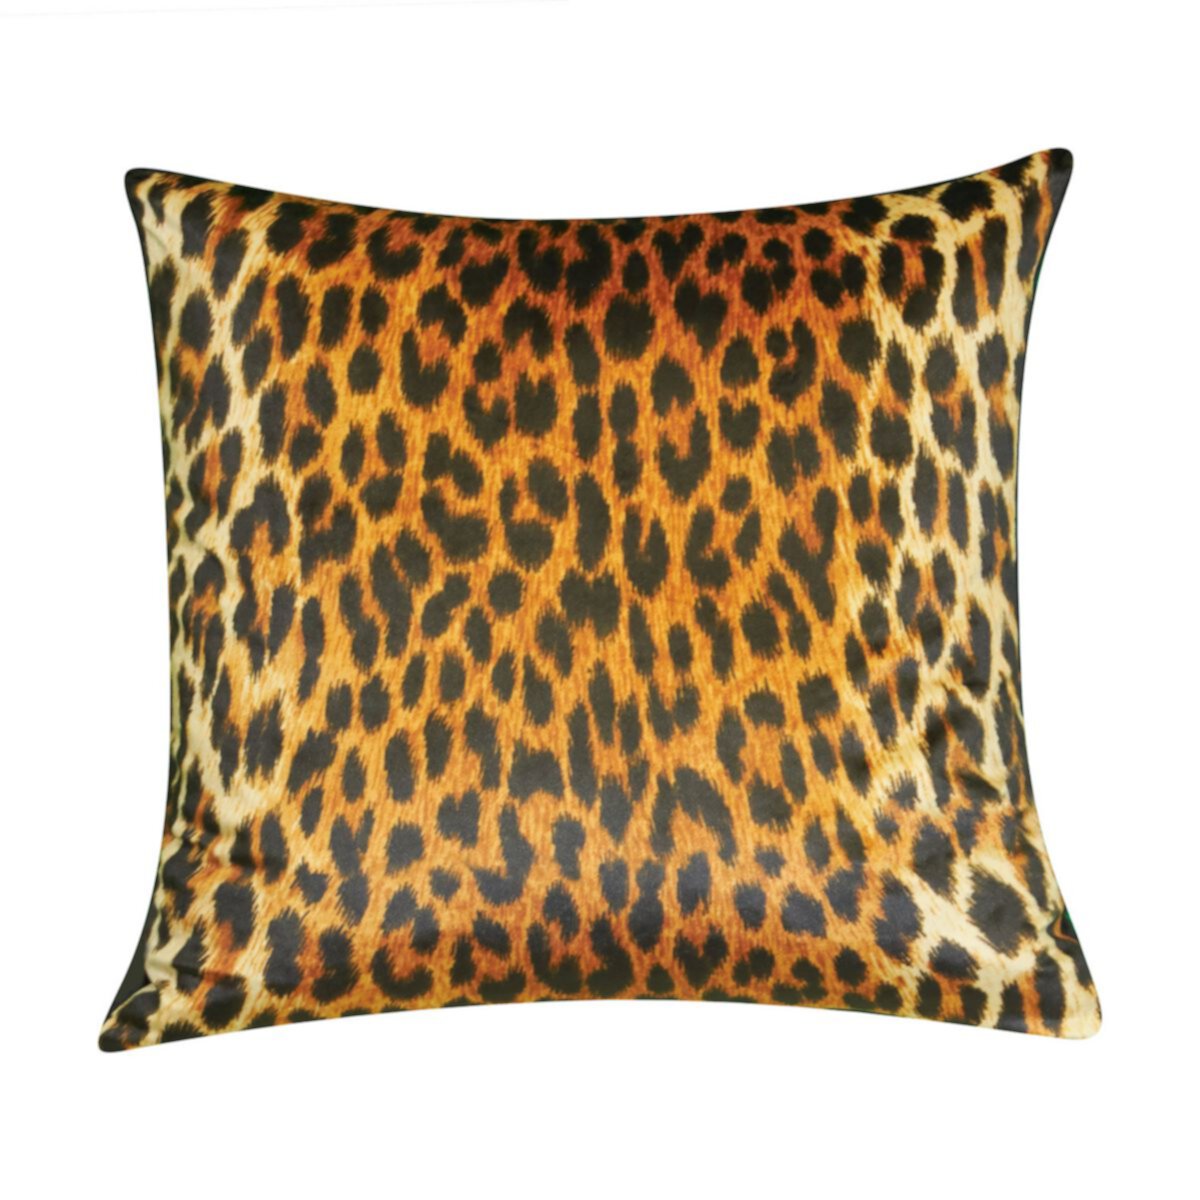 Декоративная подушка Edie @ Home Jazzy с леопардовым принтом Edie at Home